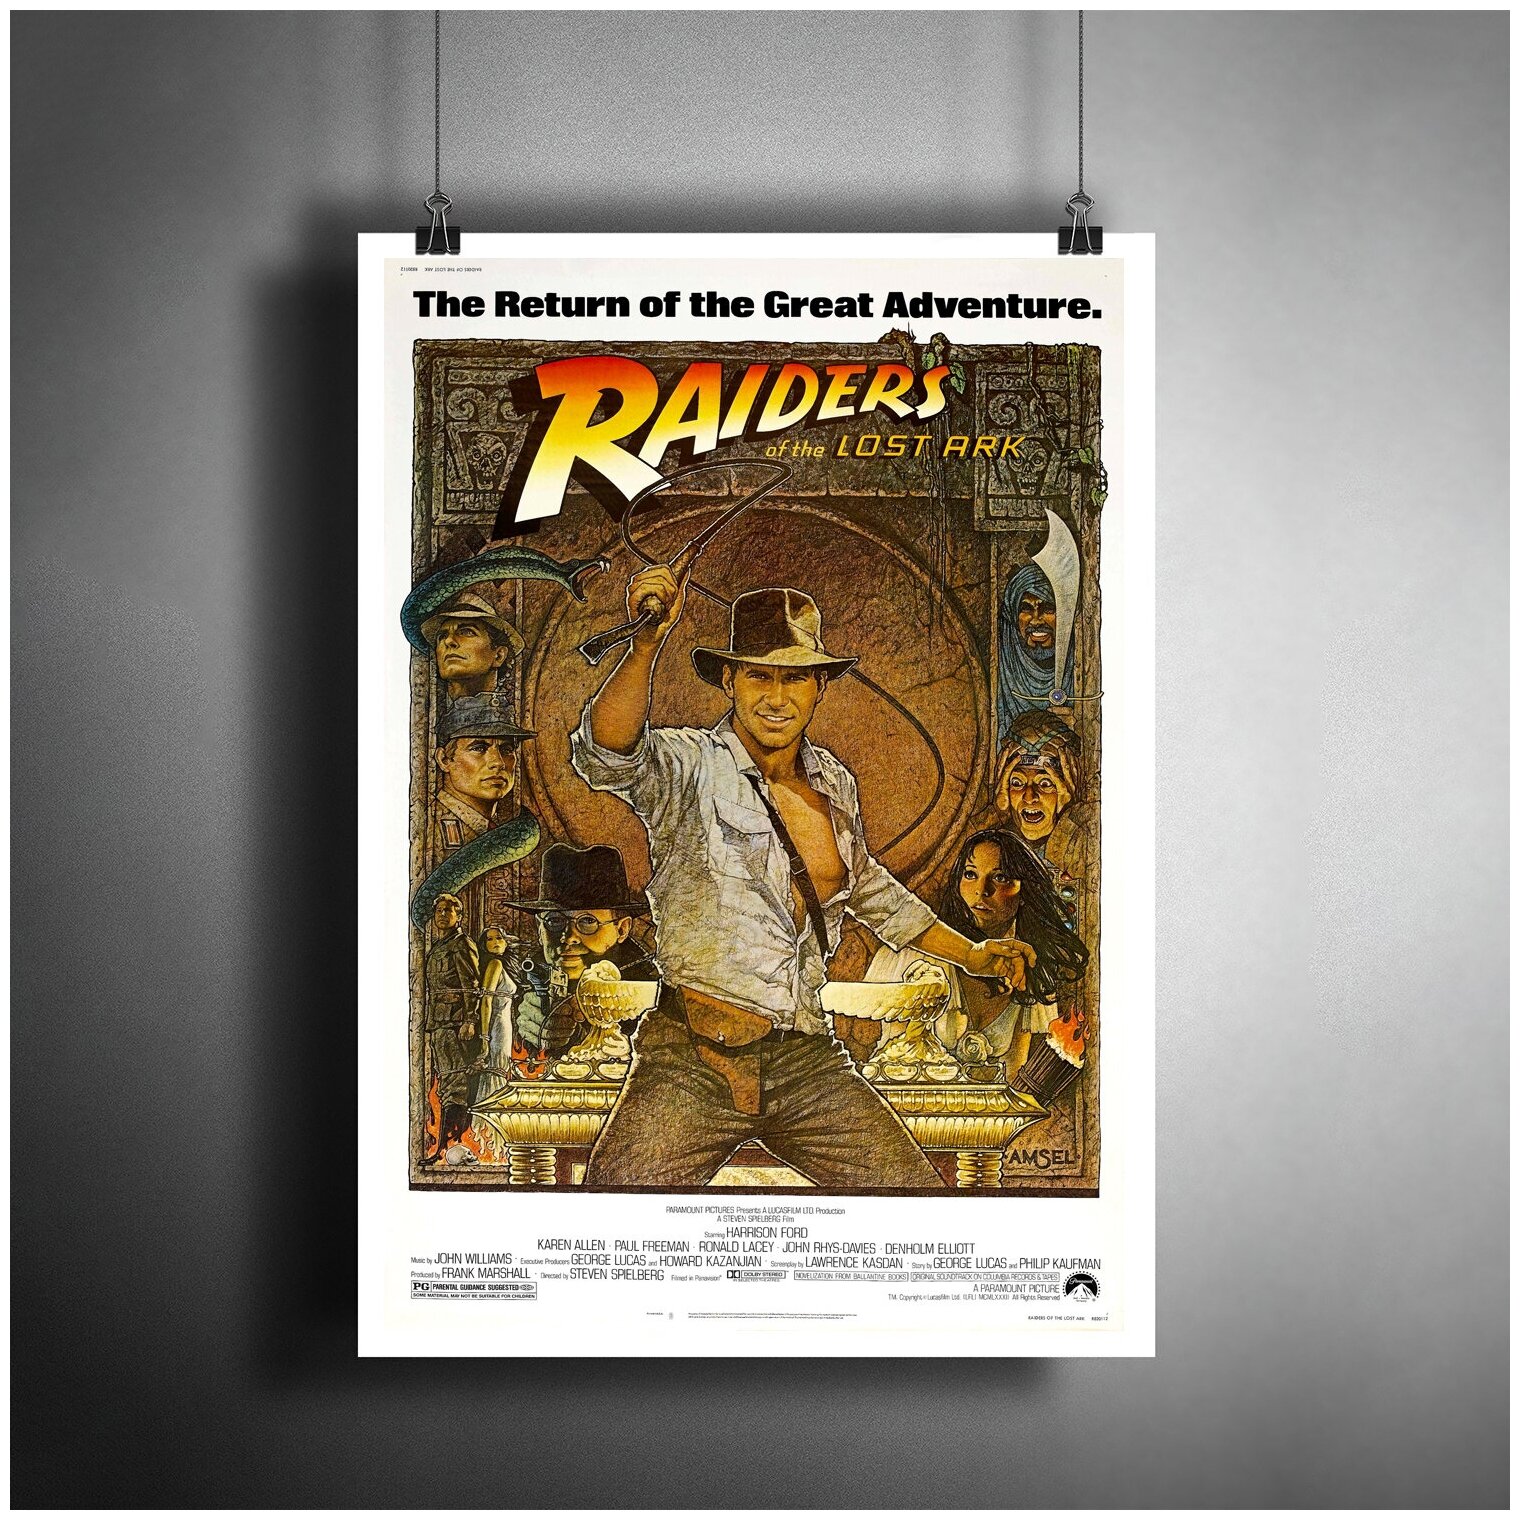 Постер плакат для интерьера "Фильм: Индиана Джонс. Indiana Jones"/ Декор дома, офиса, комнаты A3 (297 x 420 мм)